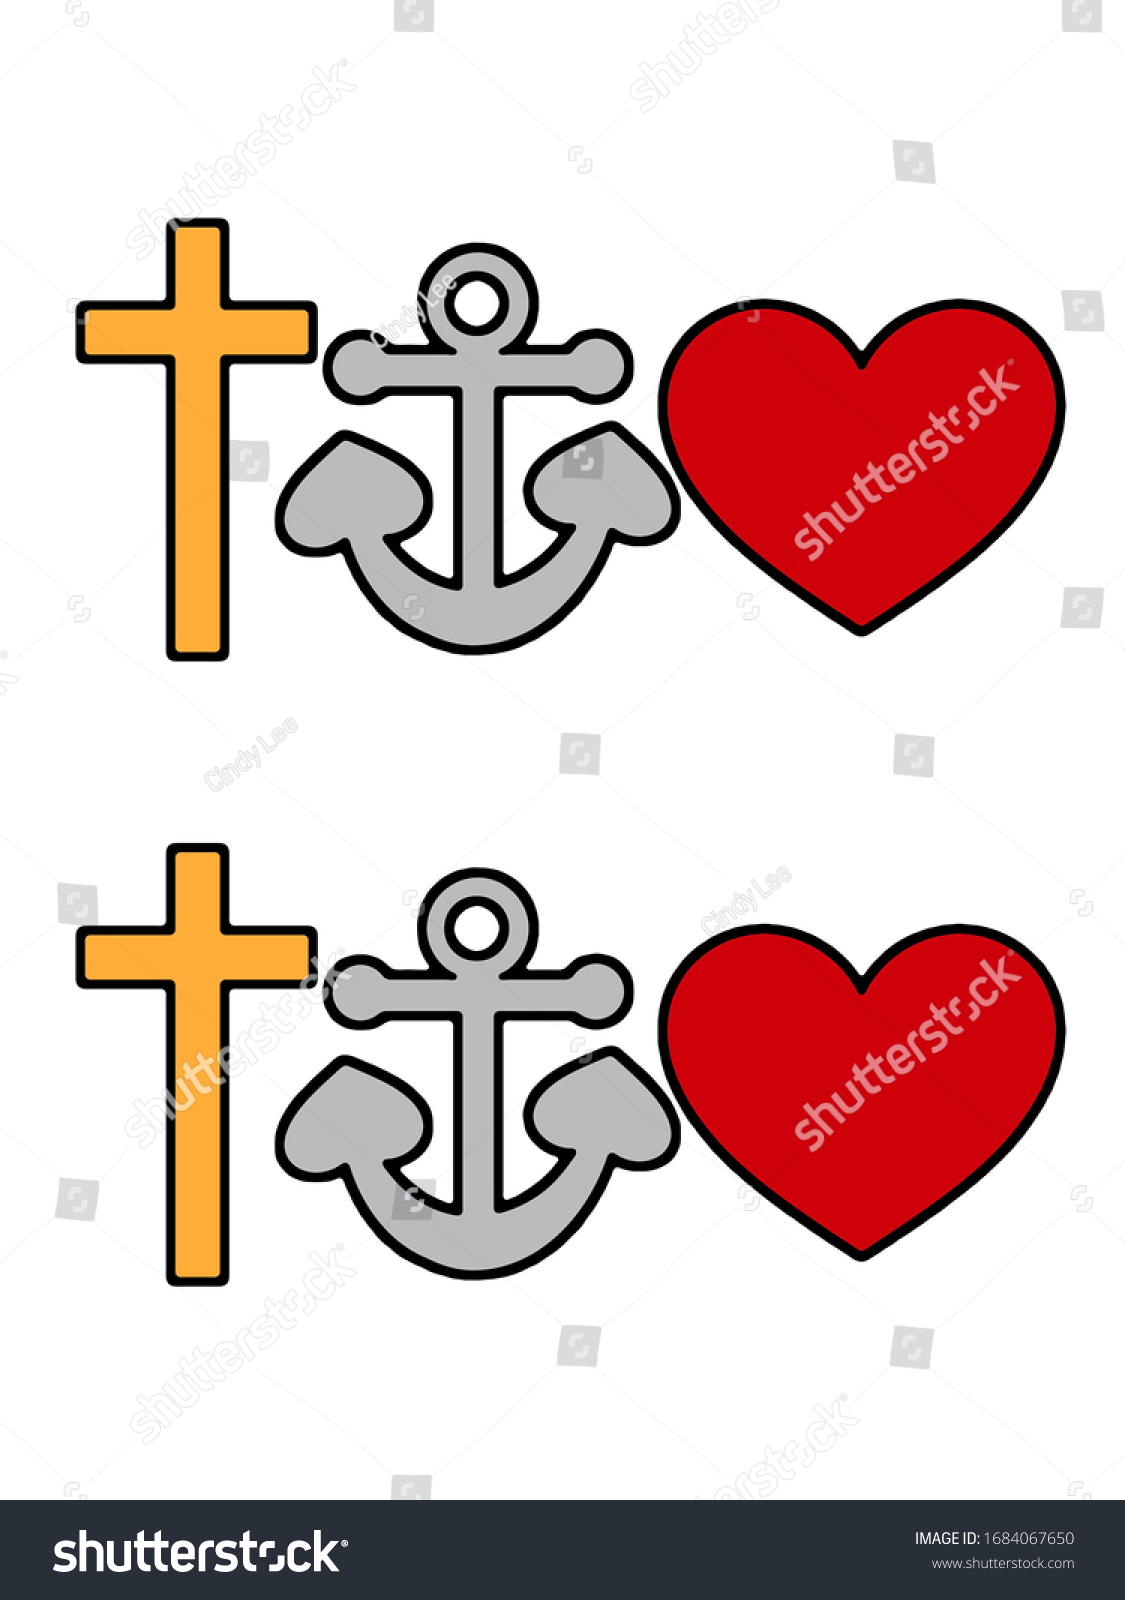 faith hope love anchor cross heart